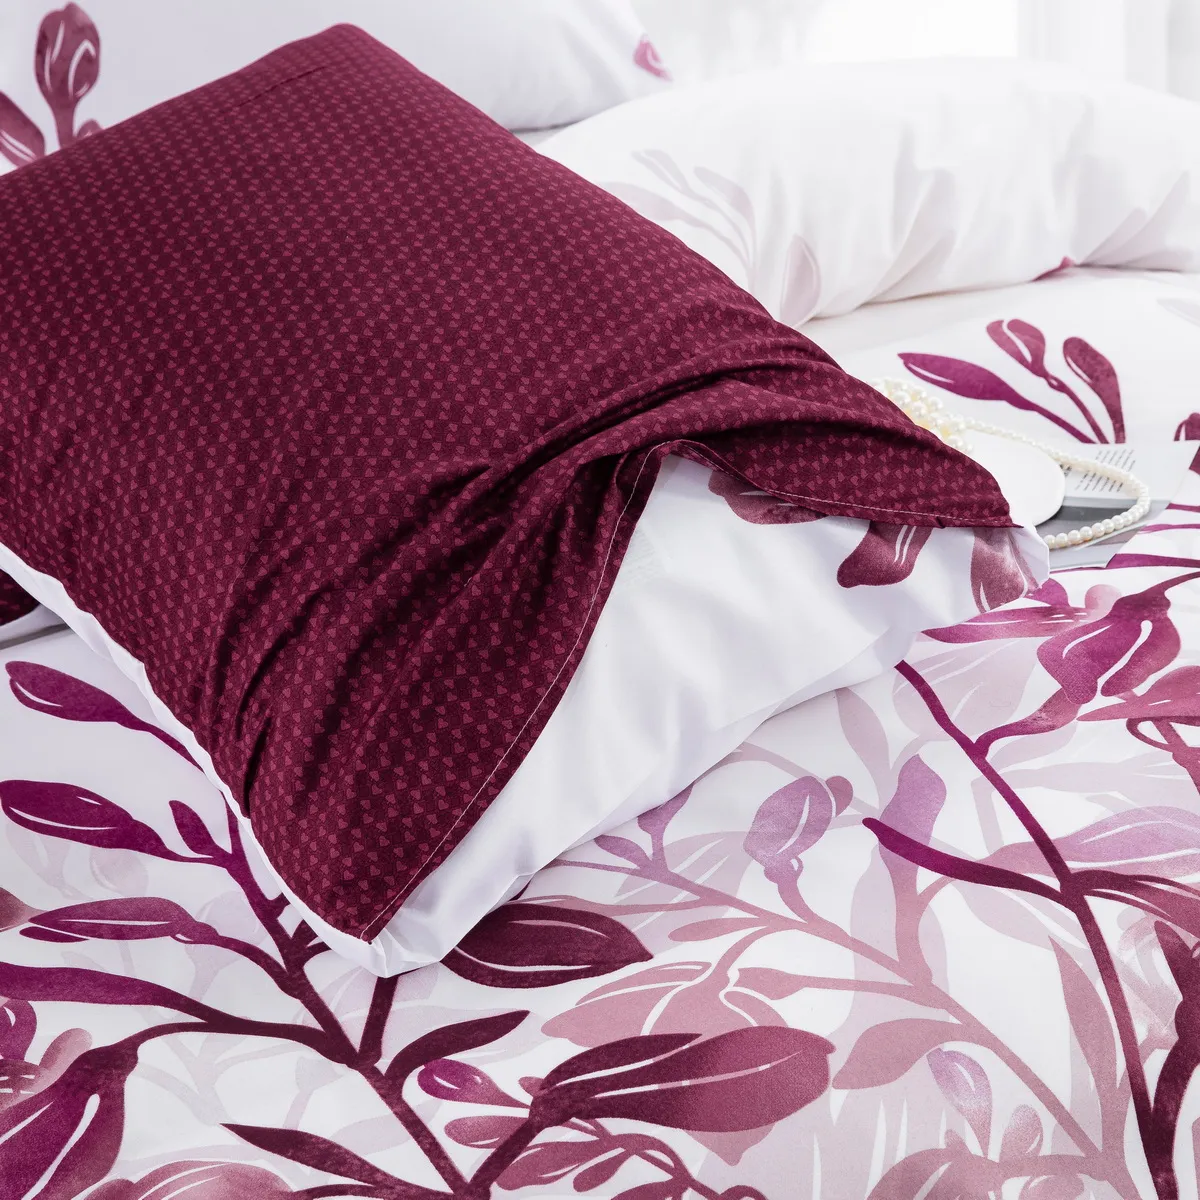 Red Leaf Series Bettwäsche-Set - Dreiteiliges Set bestehend aus einem Bettbezug und zwei Kissenbezügen Weinrot big image 1